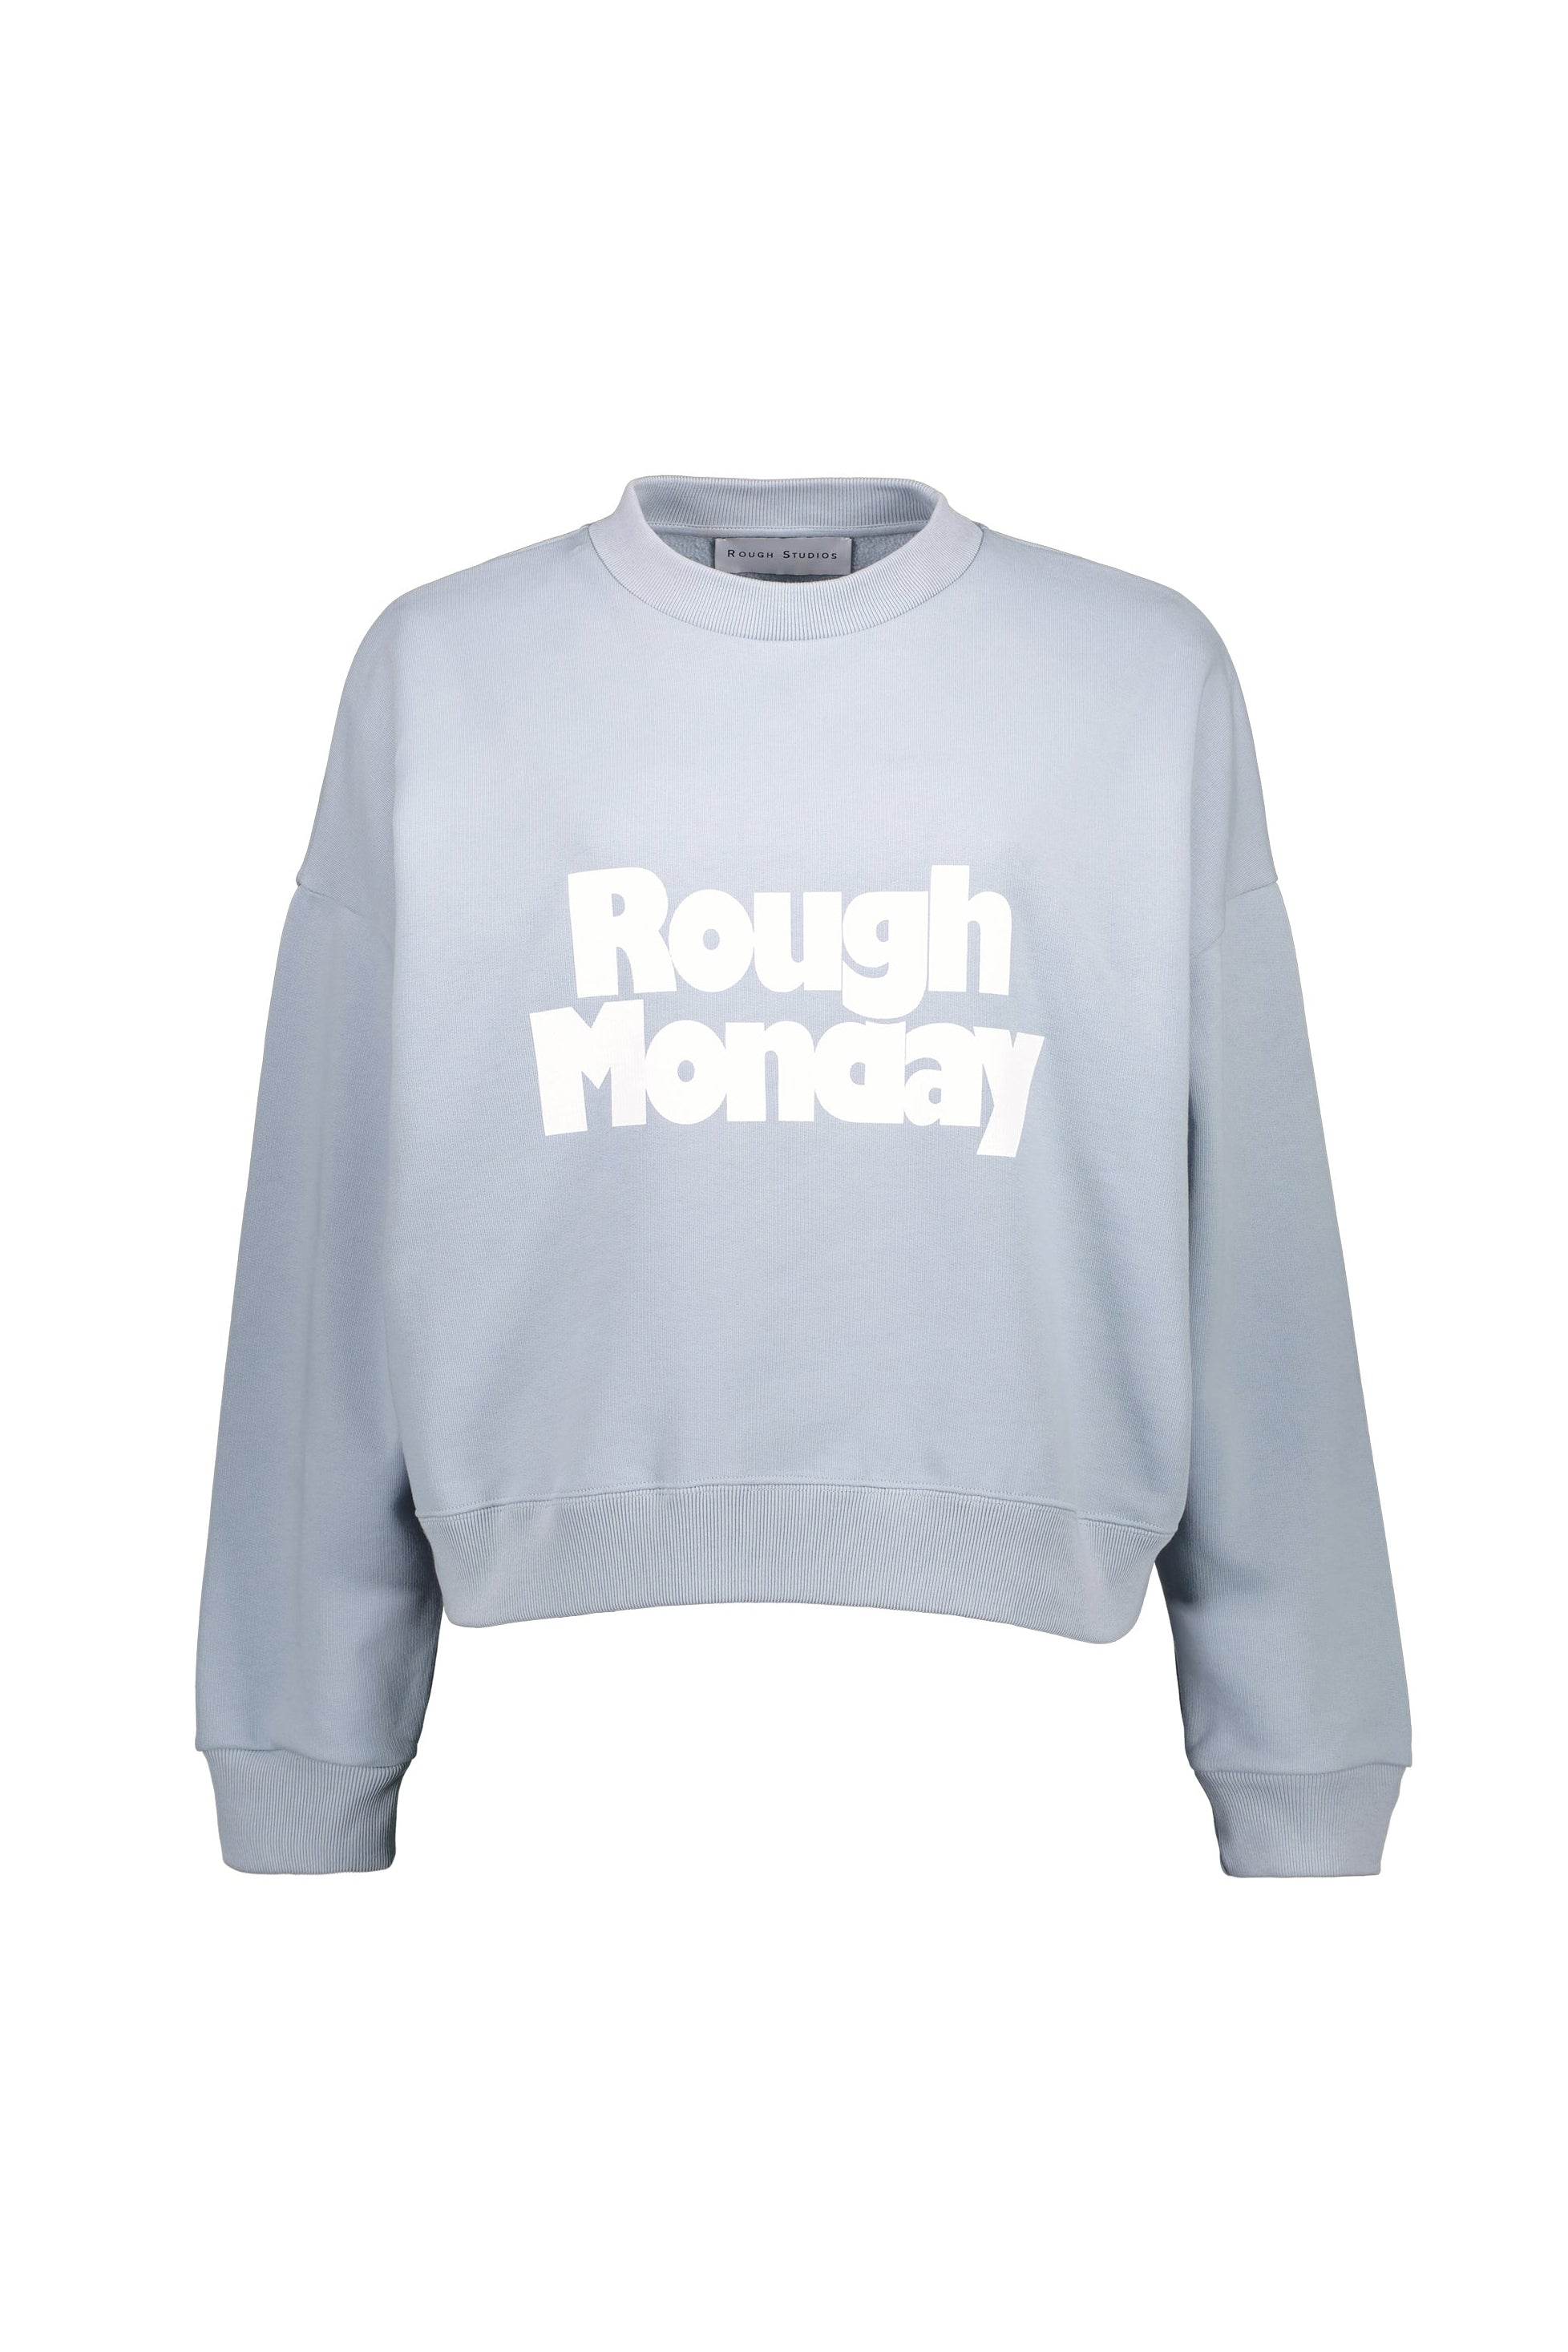 Rough Studios Rough Monday Sweater - Blue - RUM Amsterdam